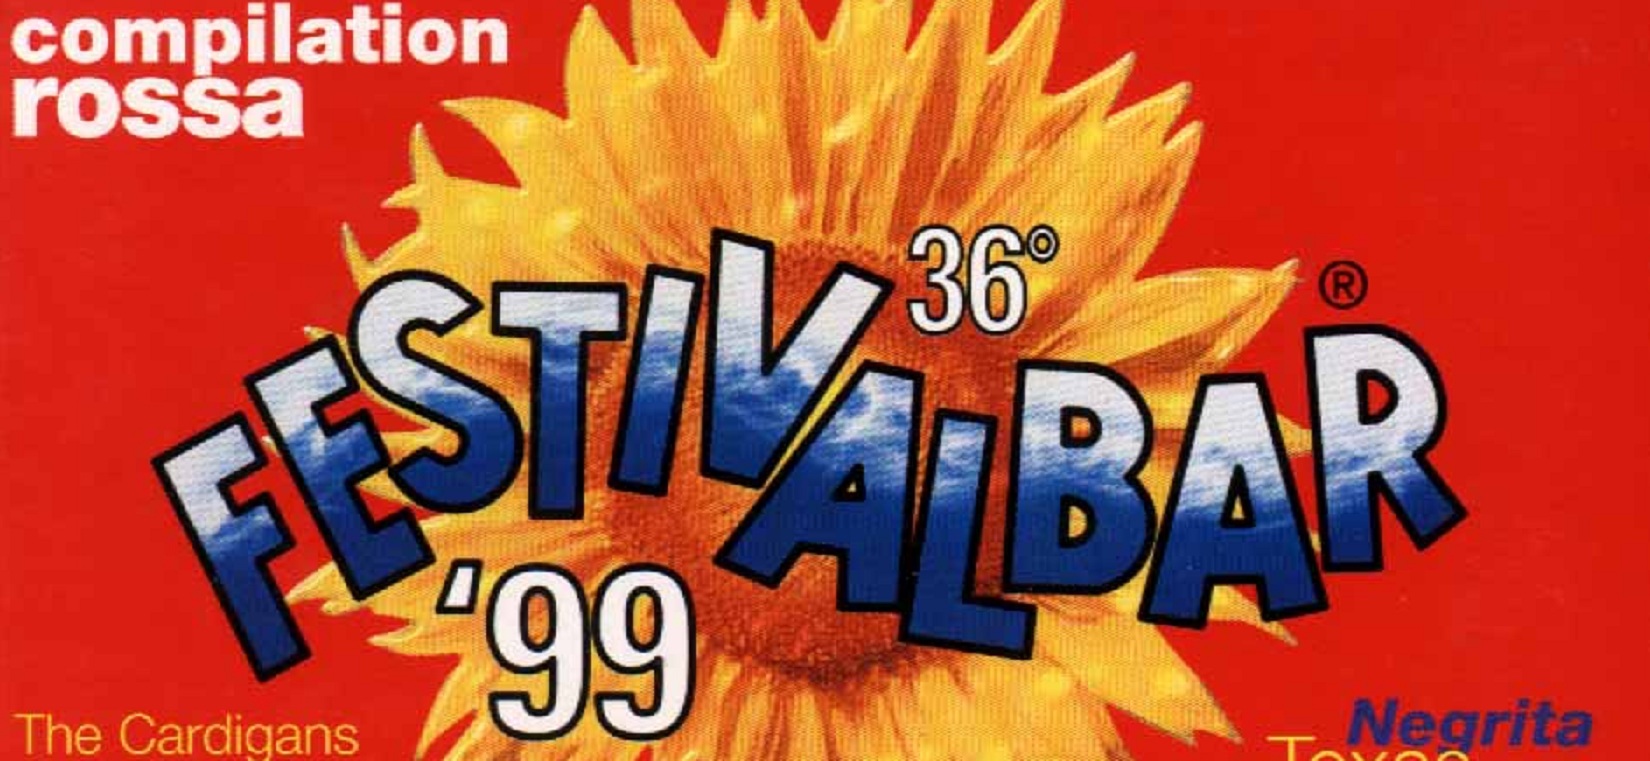 festivalbar hit 1999